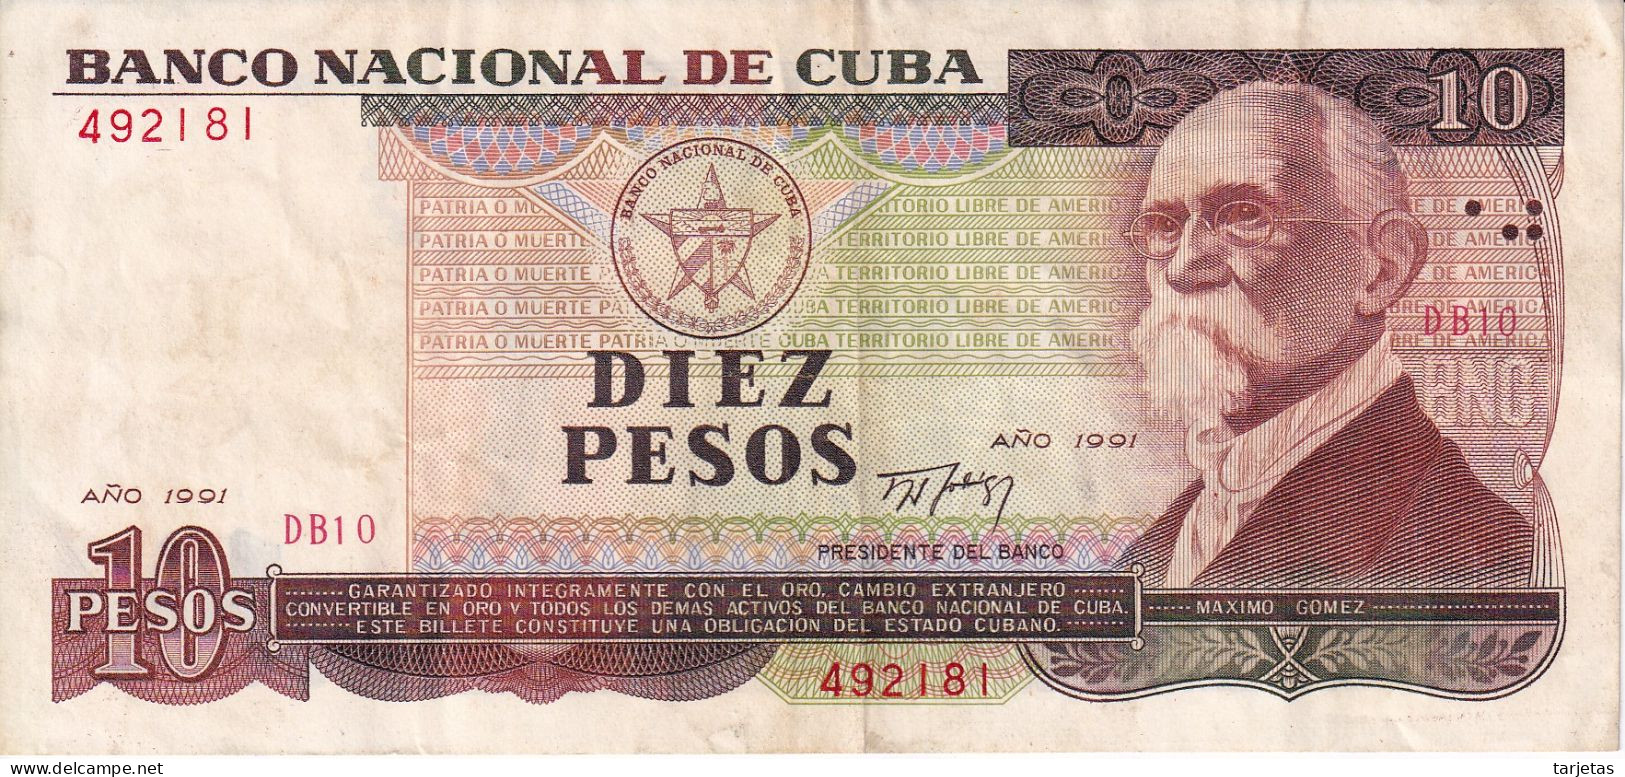 BILLETE DE CUBA DE 10 PESOS DEL AÑO 1991 (BANKNOTE) MAXIMO GOMEZ - Cuba